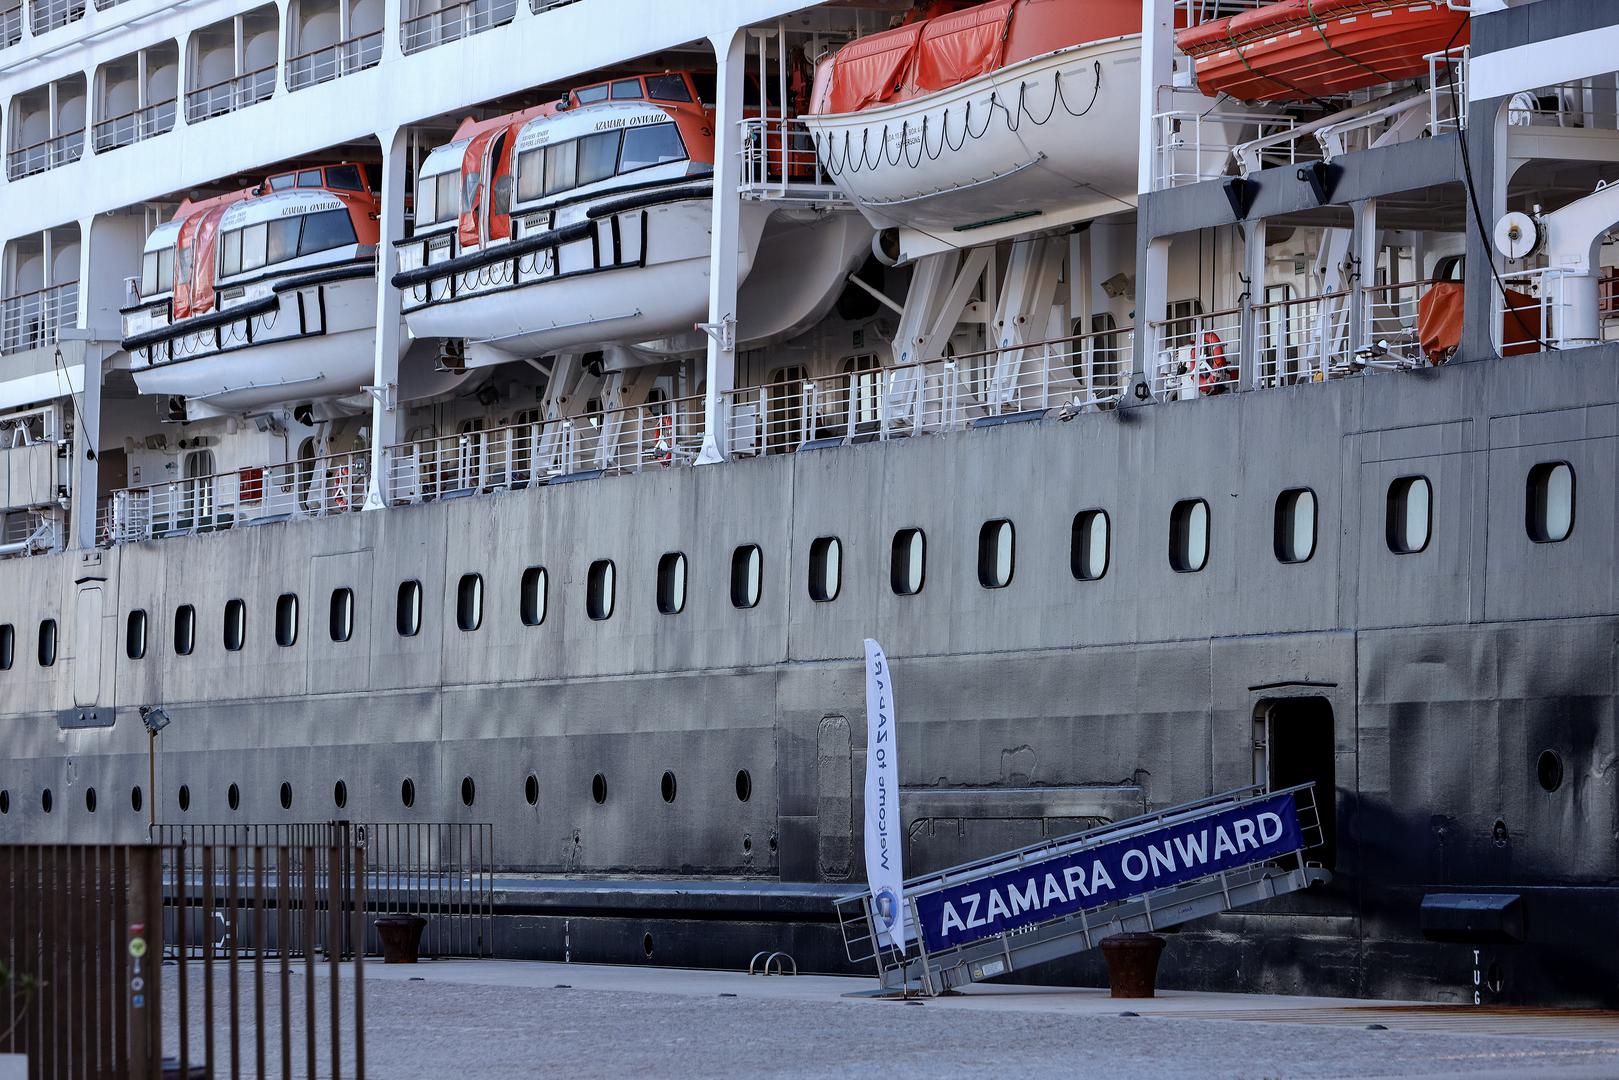 12.06.2023., Zadar - MS Azamara Onward, bivsi R Three i Pacific Princess, je brod za krstarenje u vlasnistvu i pod upravom Azamara Cruises od 2022. Izgradjen je 1999. godine u brodogradilistu Chantiers de l'Atlantique u Saint-Nazaireu u Francuskoj za Renaissance Cruises. Photo: Sime Zelic/PIXSELL